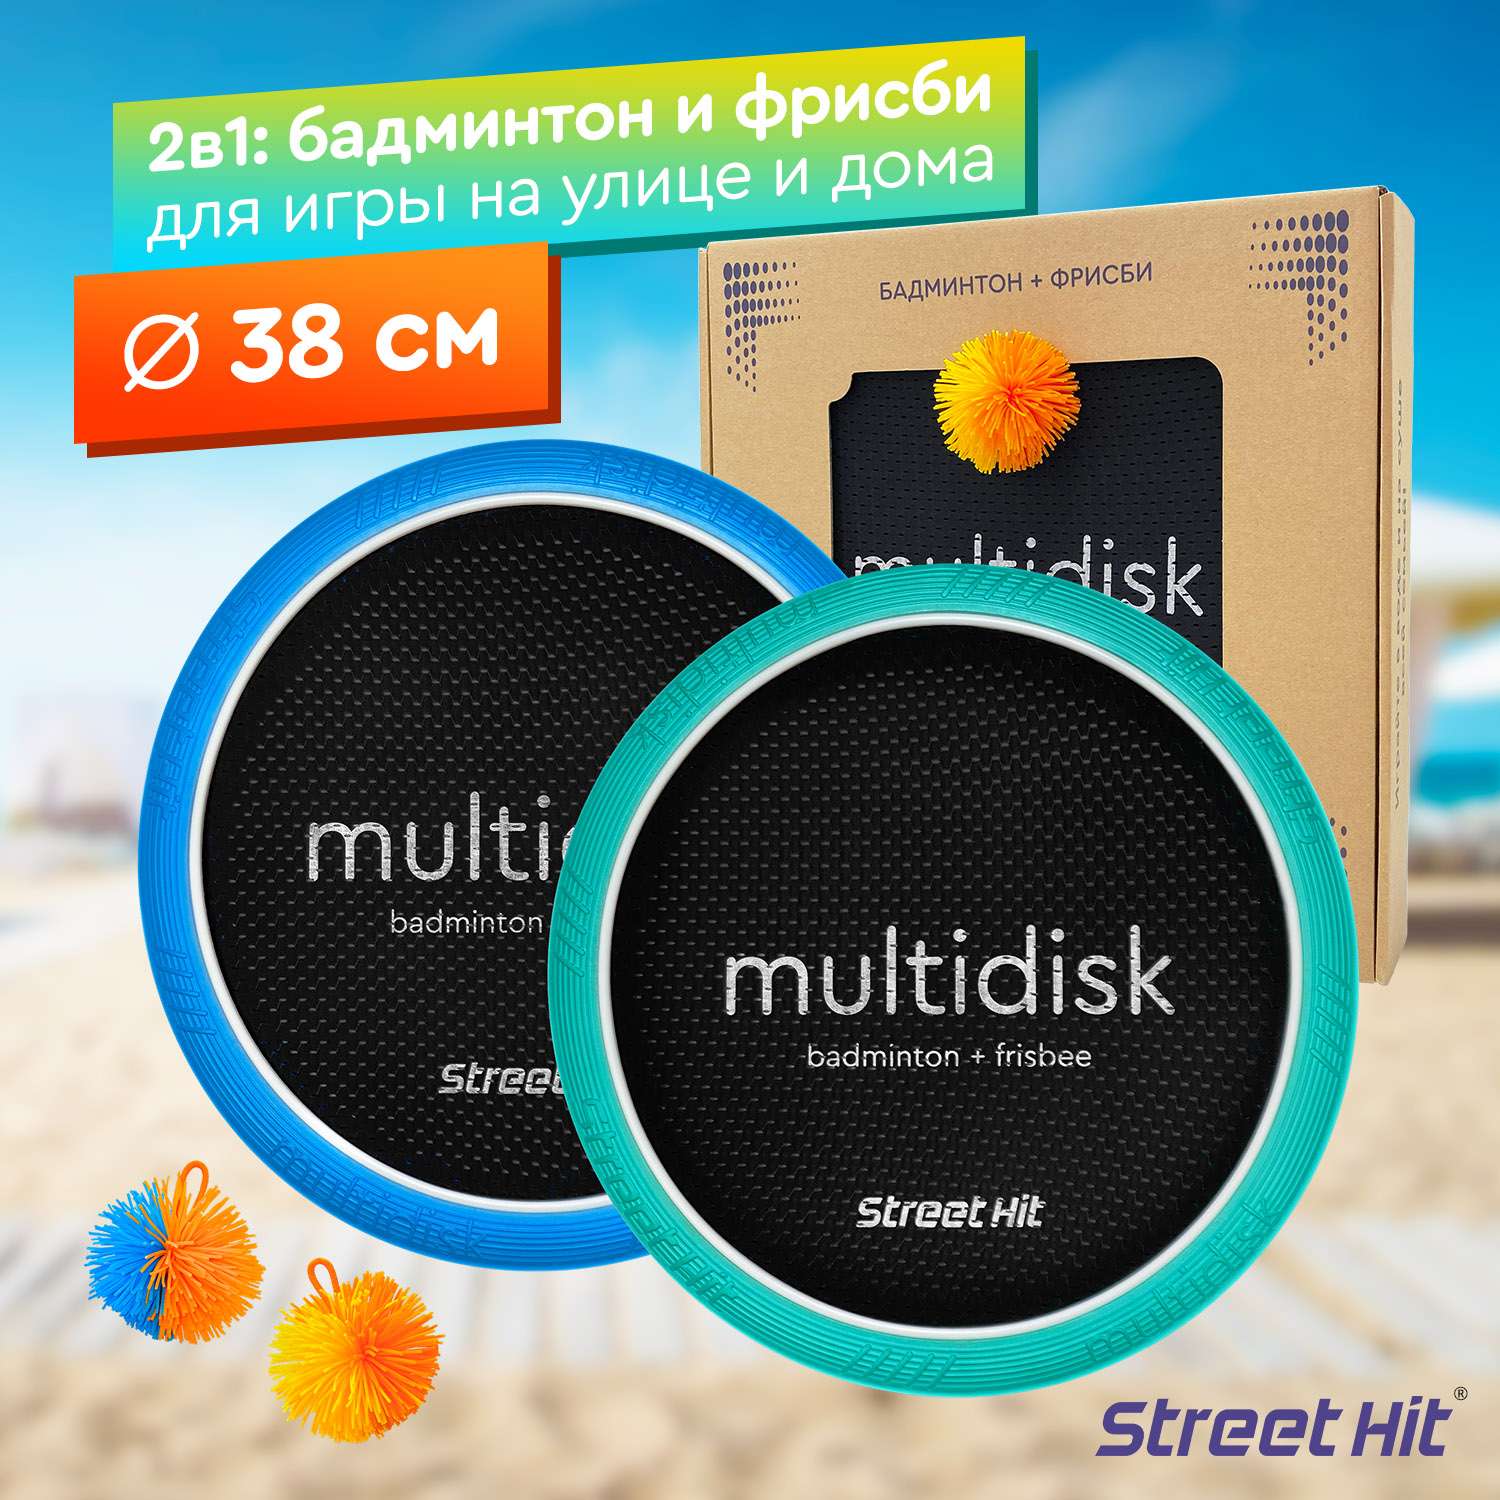 Набор для игры Street Hit Мультидиск Maxi 38 см мятно-синий - фото 1